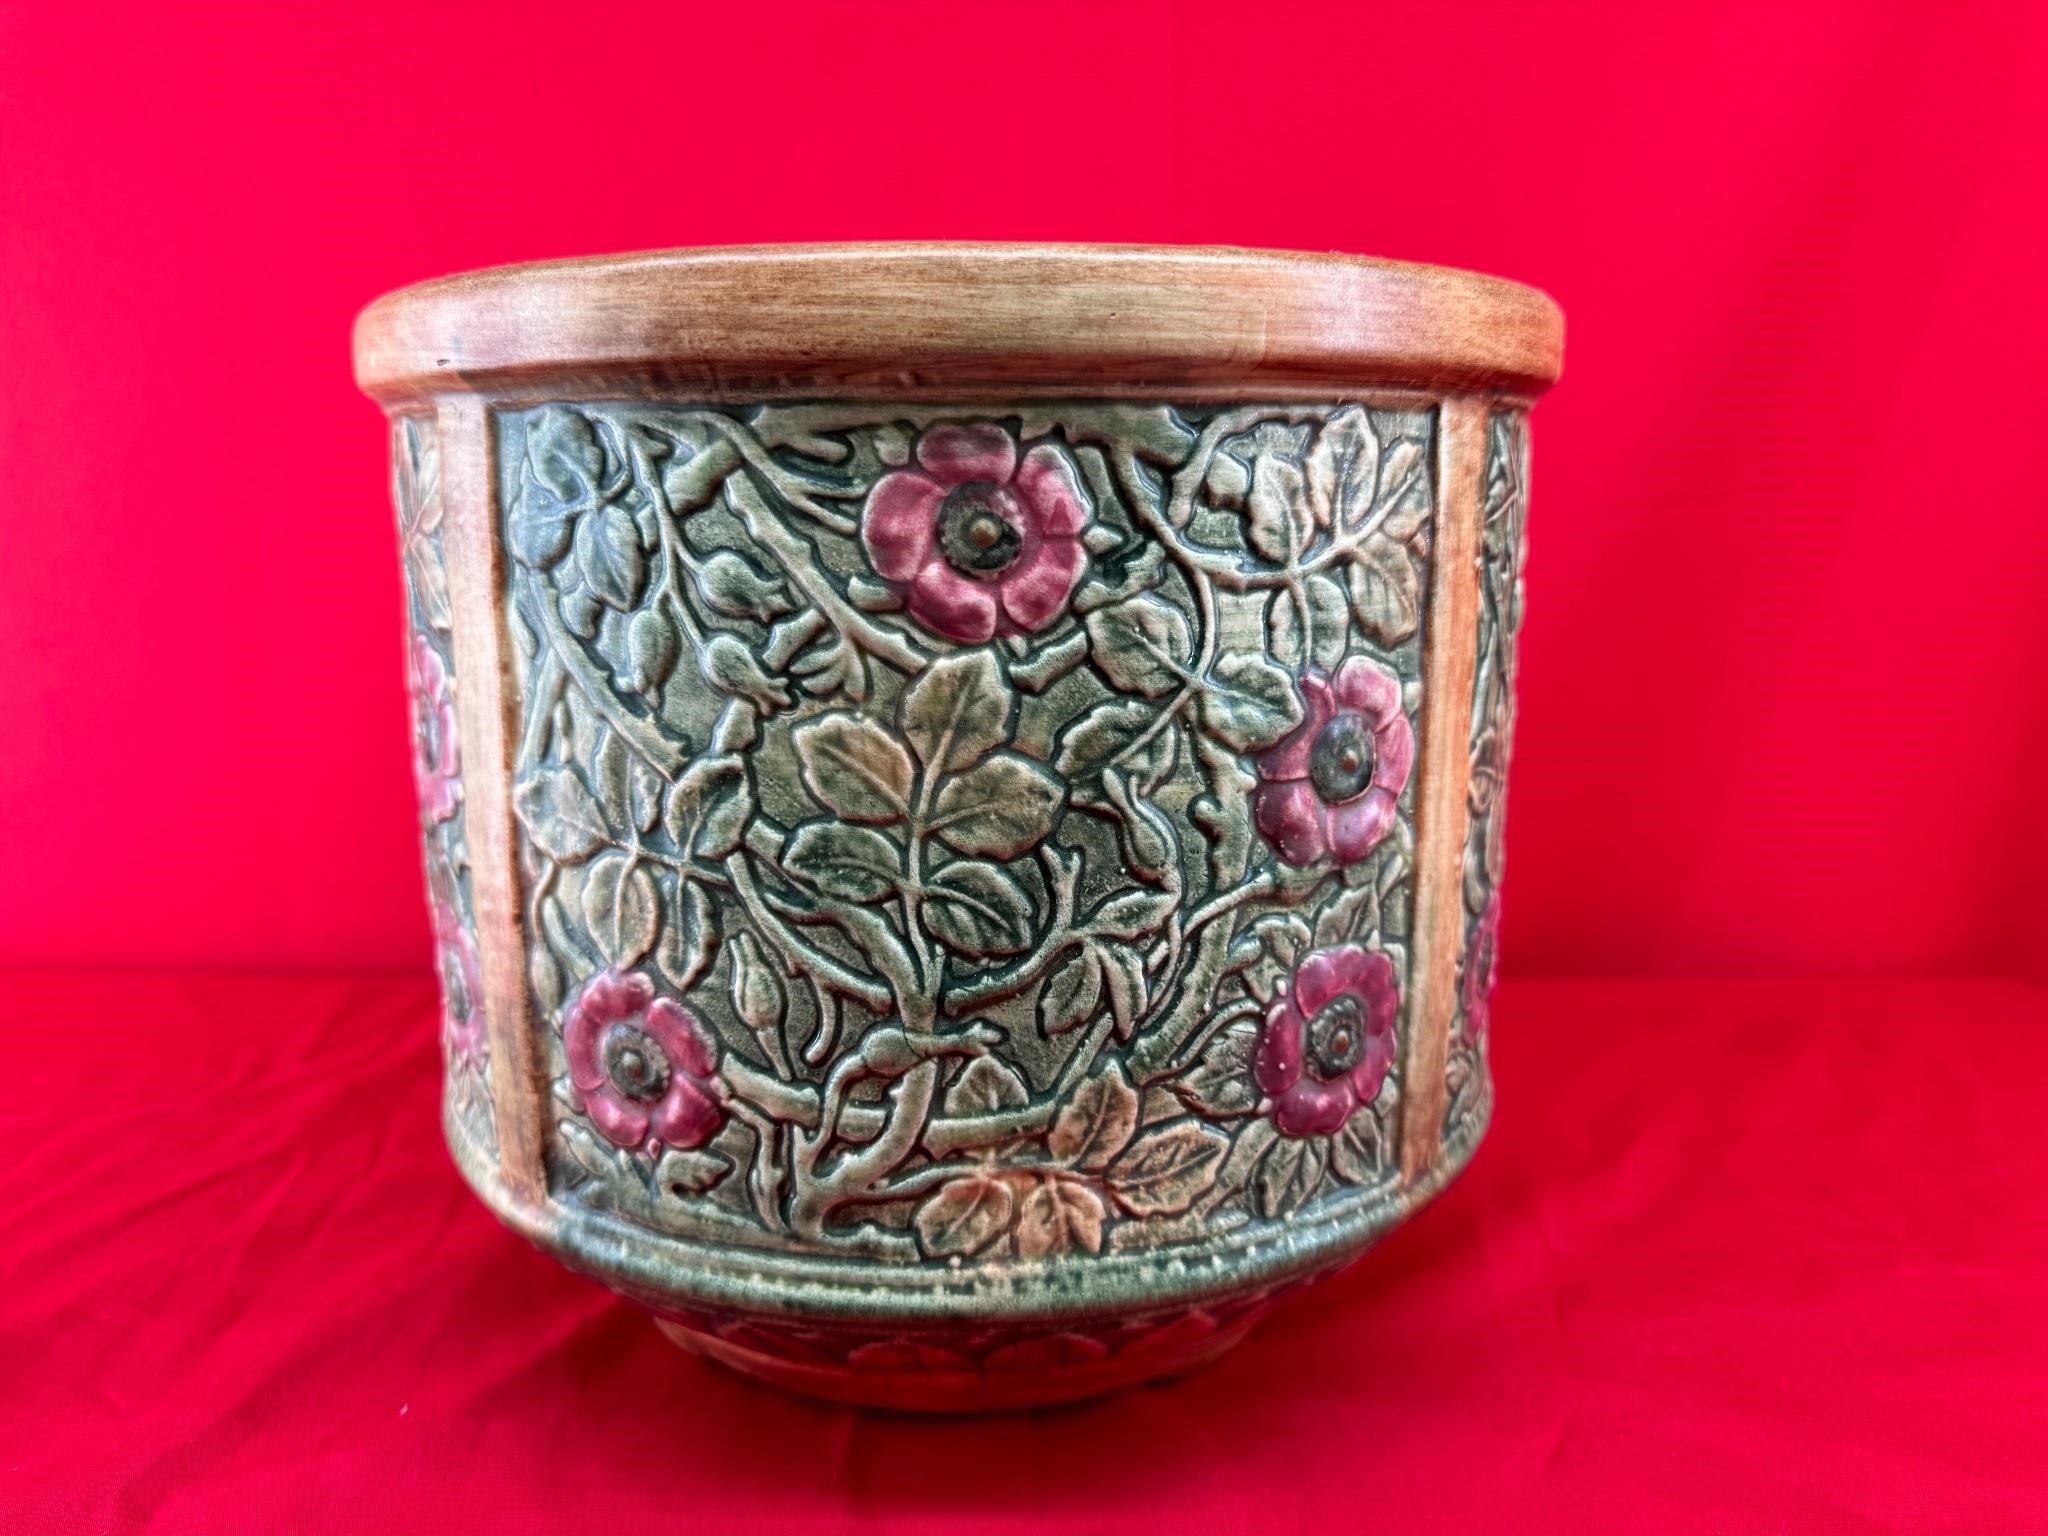 Vintage Ceramic Floral Planter